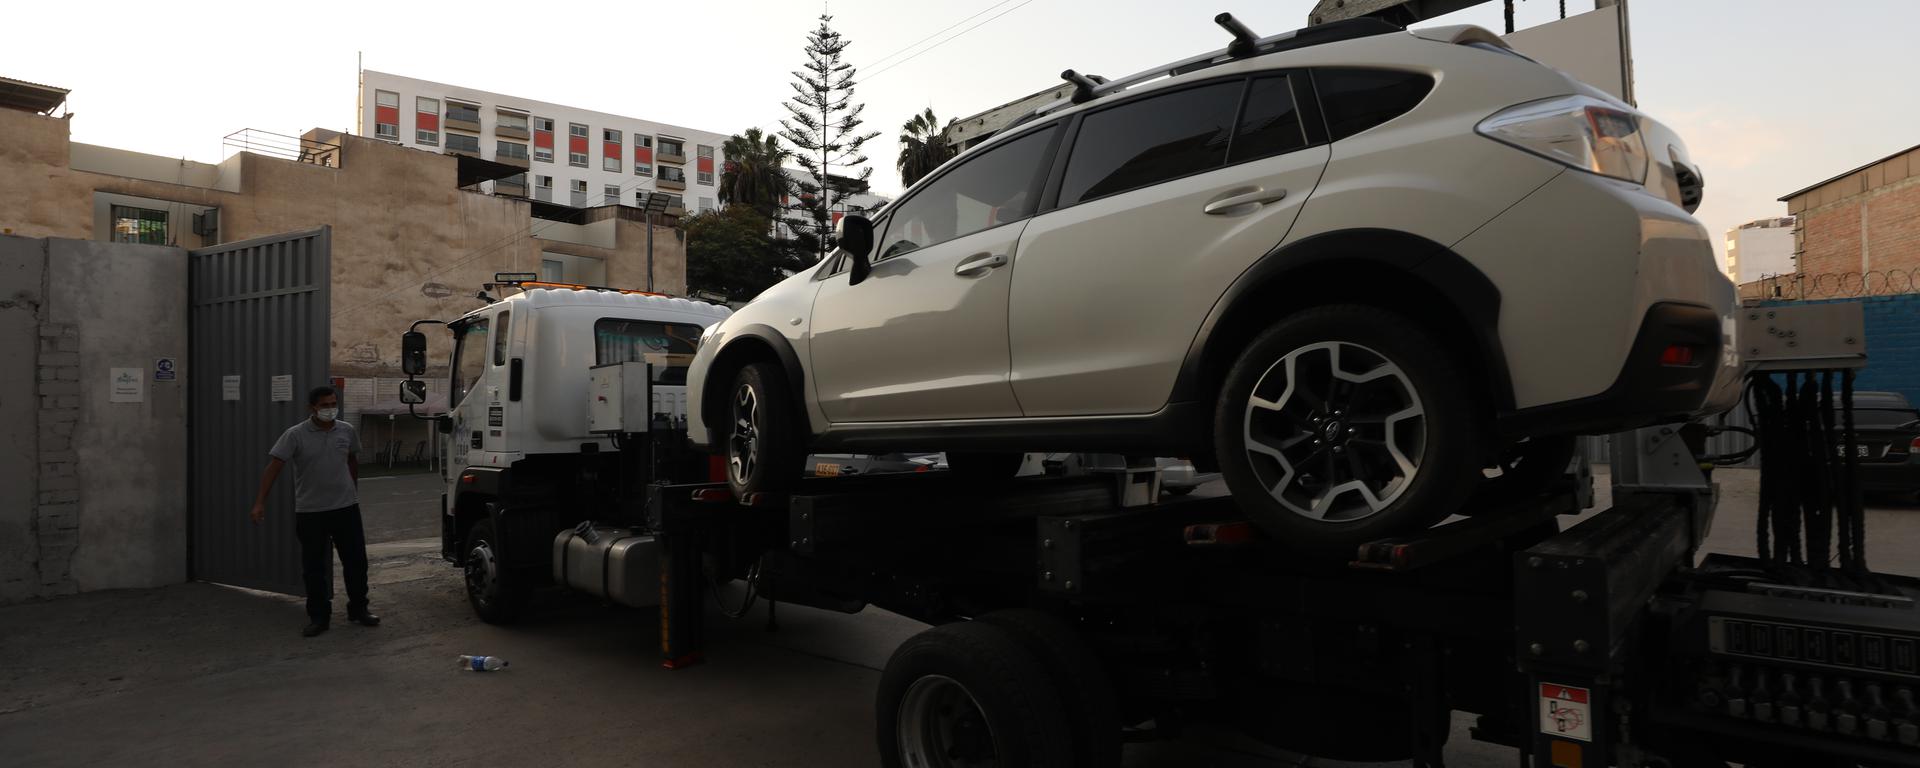 Miraflores: todo sobre el perverso “incentivo” de las grúas para remolcar tantos autos estacionados